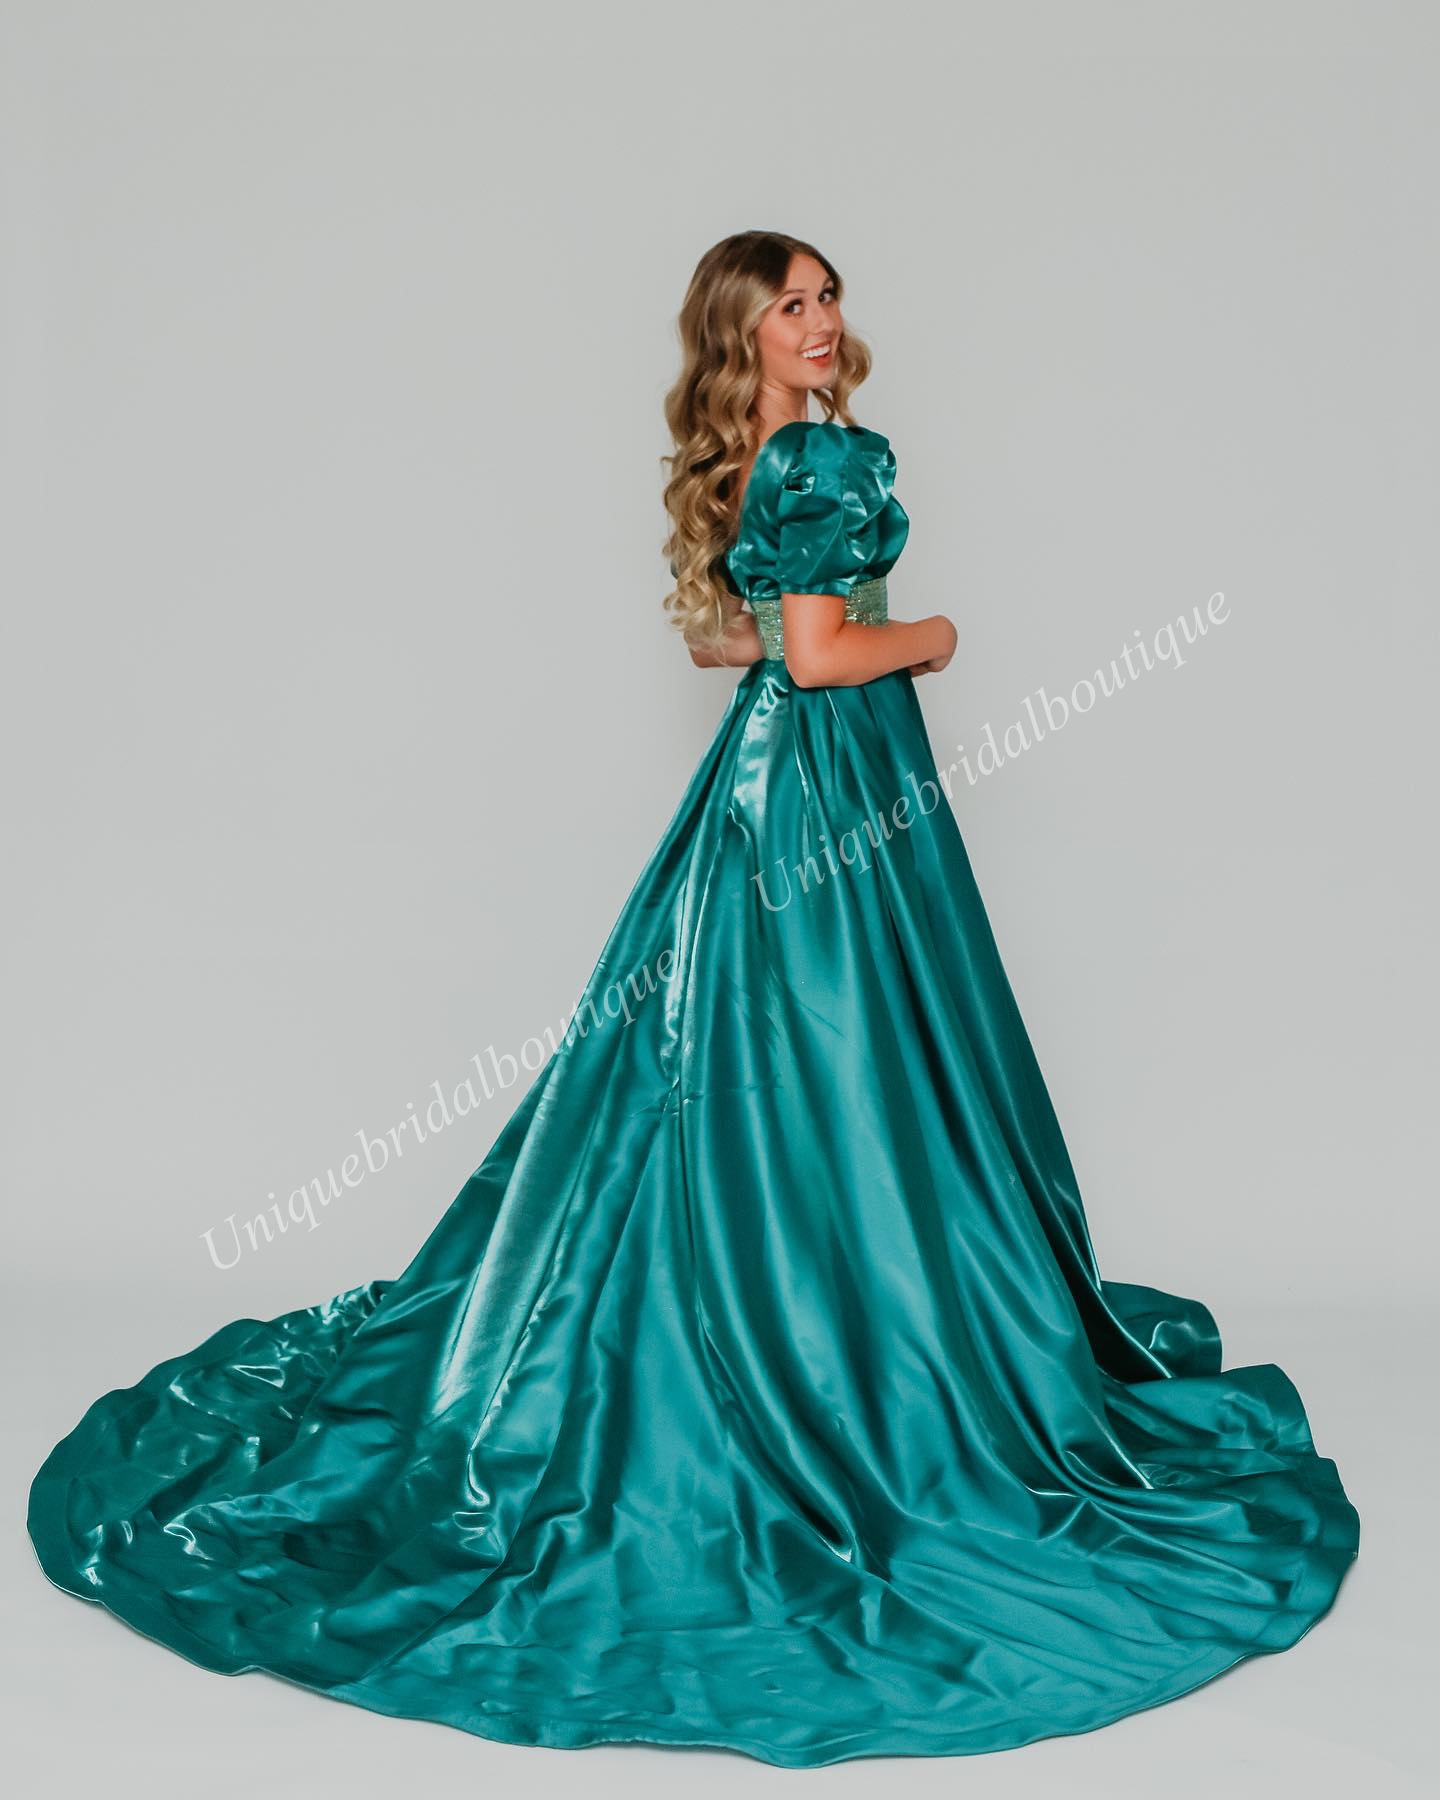 Shimmer satynowy formalny suknia wieczorowa 2K24 Puff rękawa w szyku V Lady Pageant Cocktail Party Suknia Saudyjska Arabia Red Carpet Drama Crystal Aqua Emerald Winter